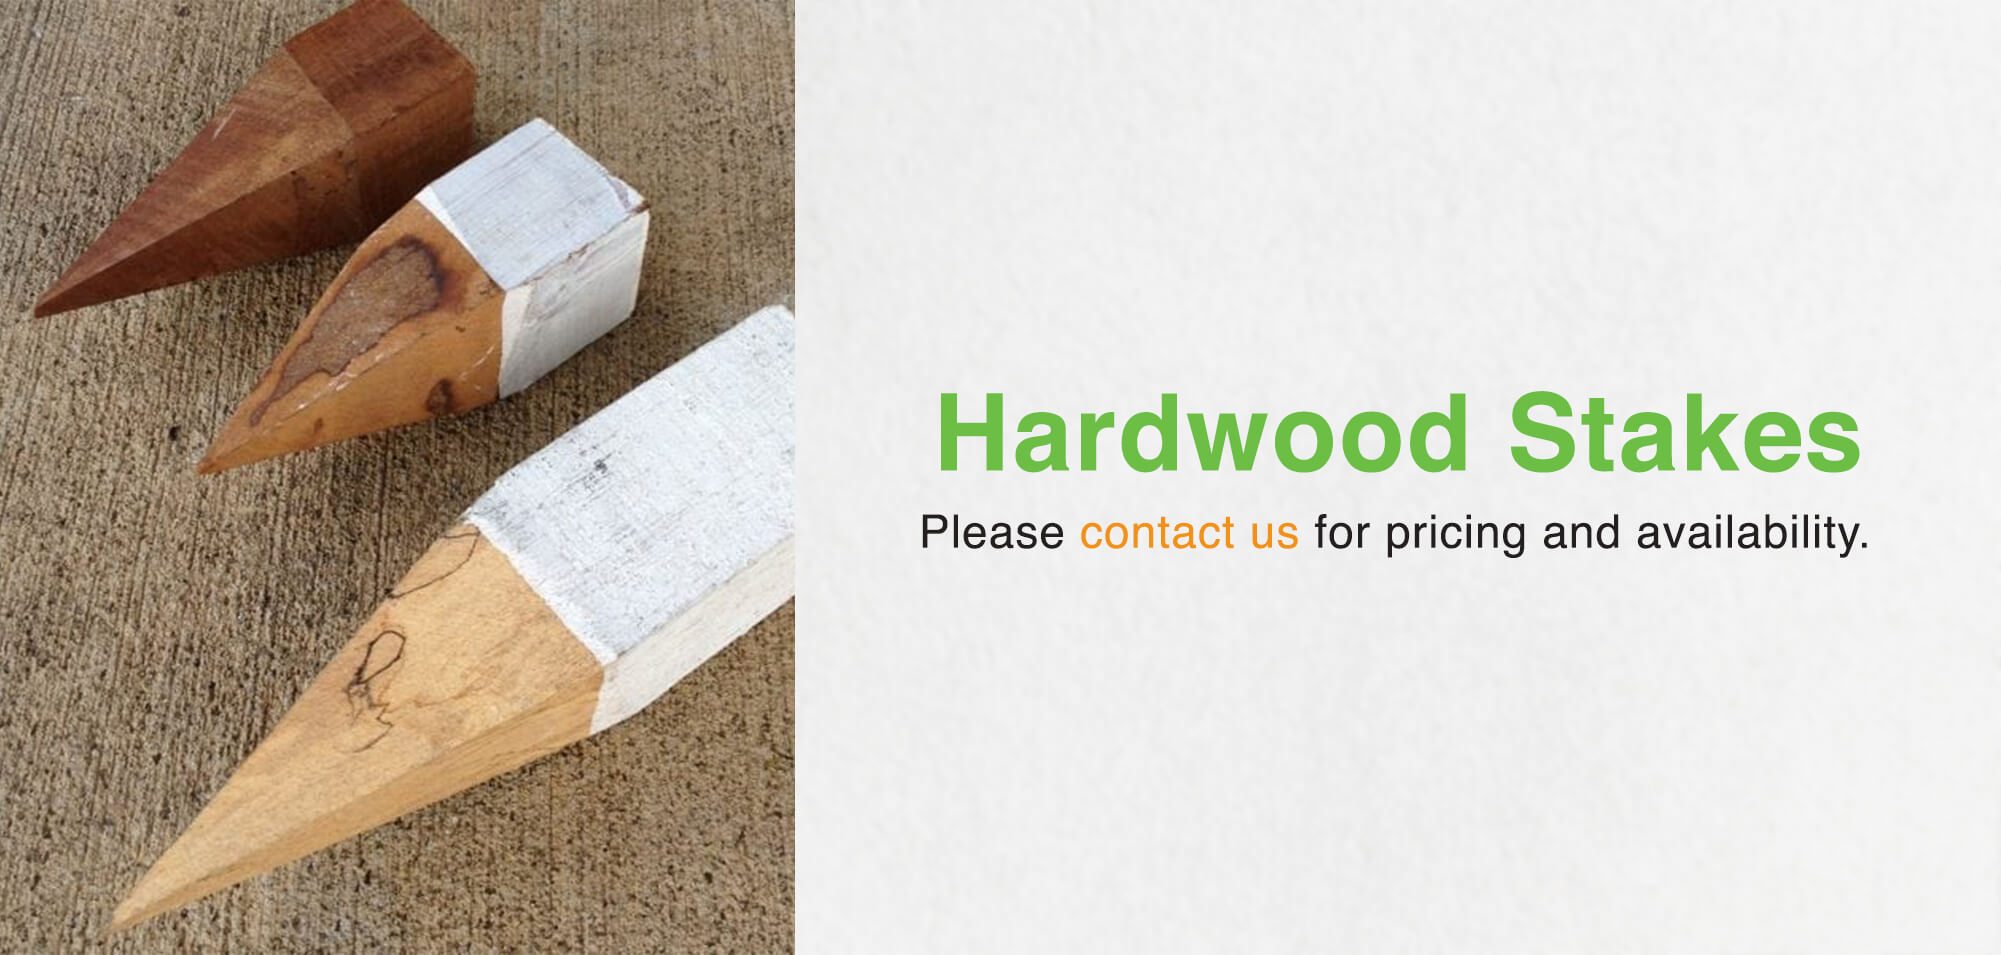 Hardwood Stakes